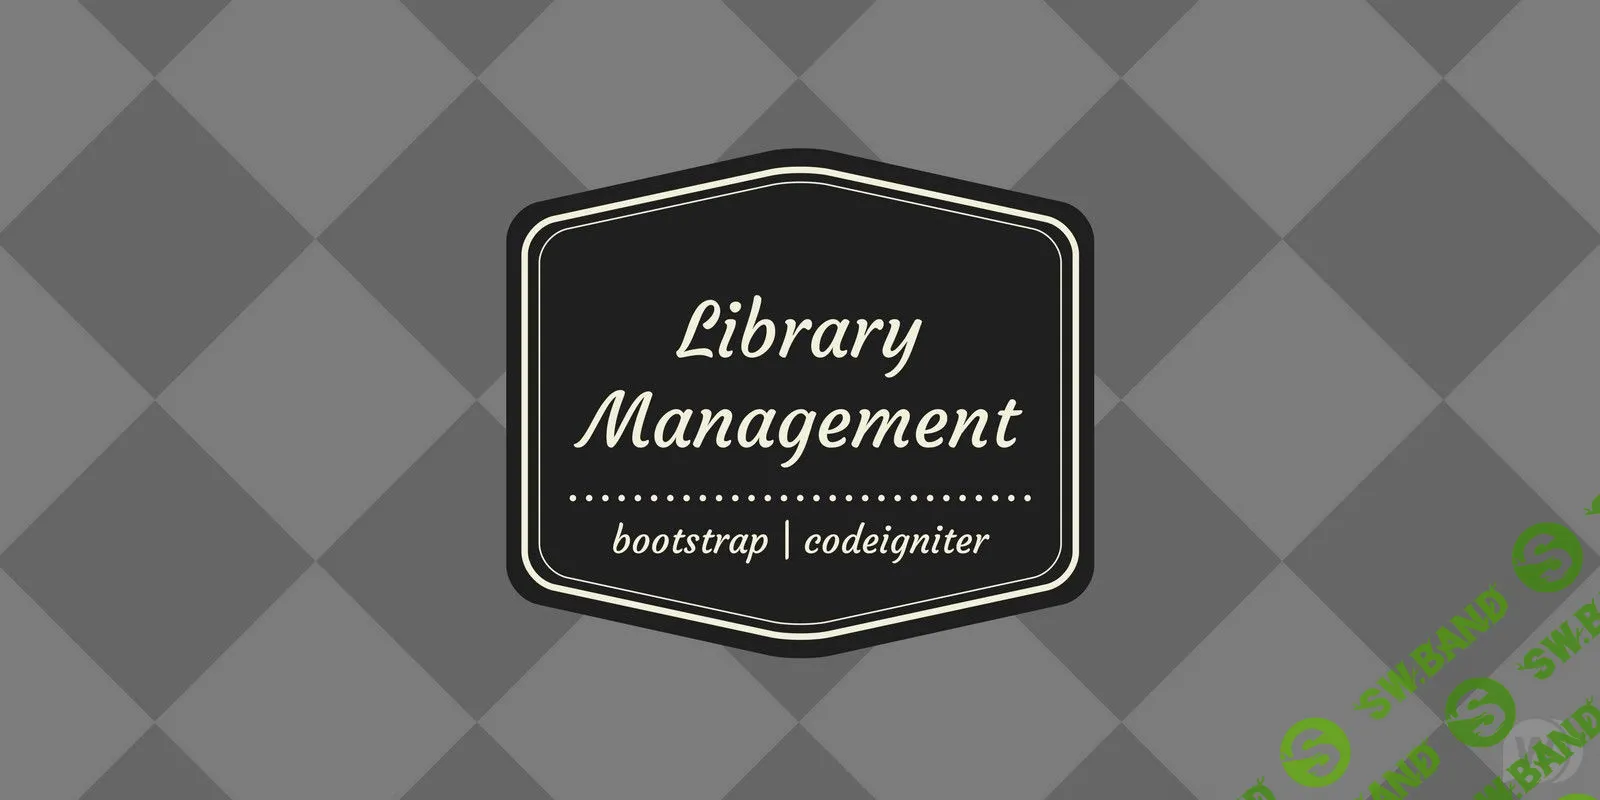 [codester] Library Management System - скрипт для управления библиотекой